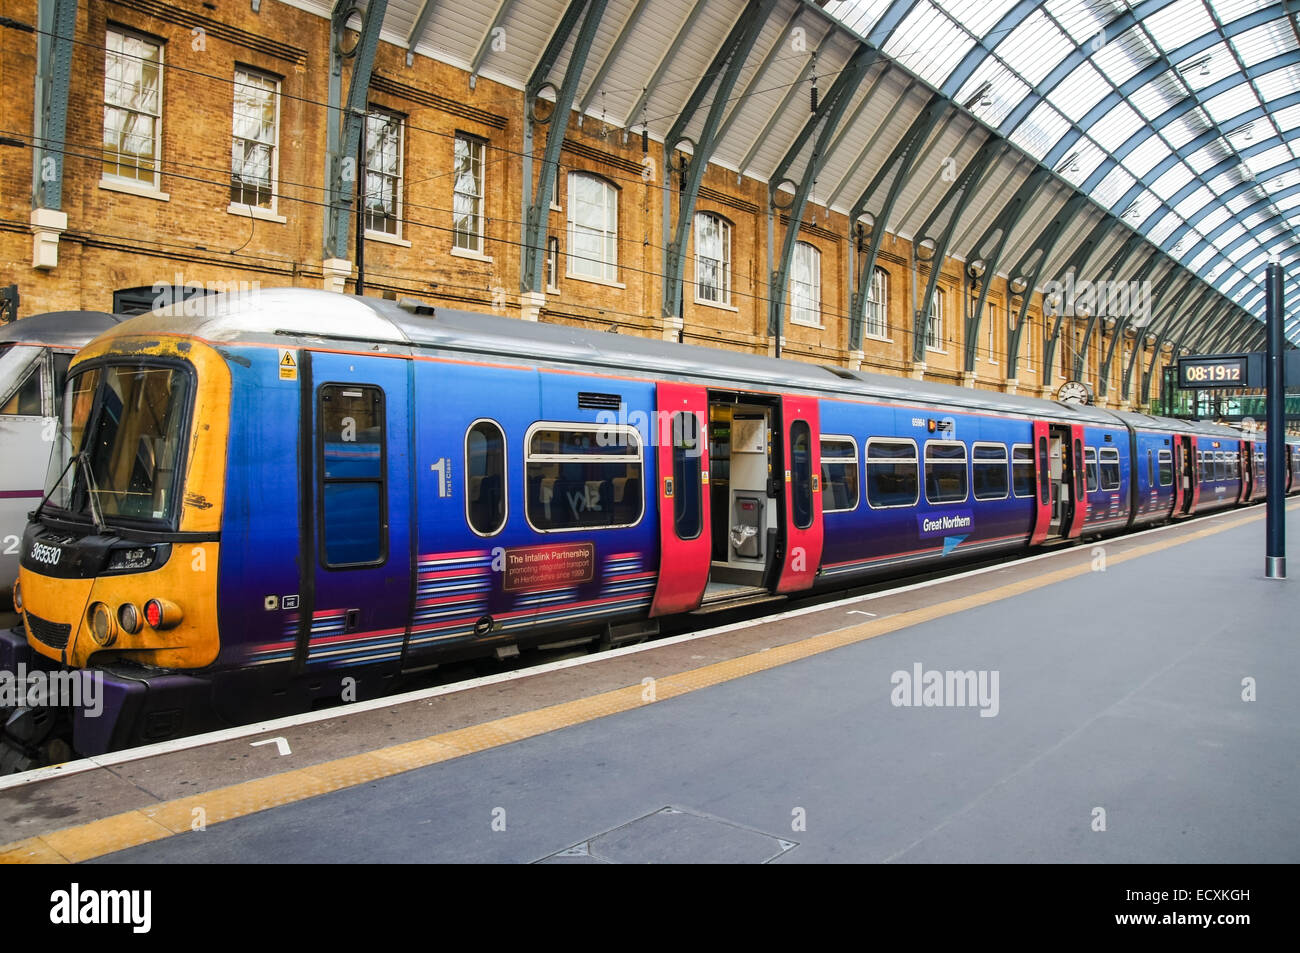 Great Northern trainieren auf der Plattform am Kings Cross Bahnhof Bahnhof London England Vereinigtes Königreich UK Stockfoto